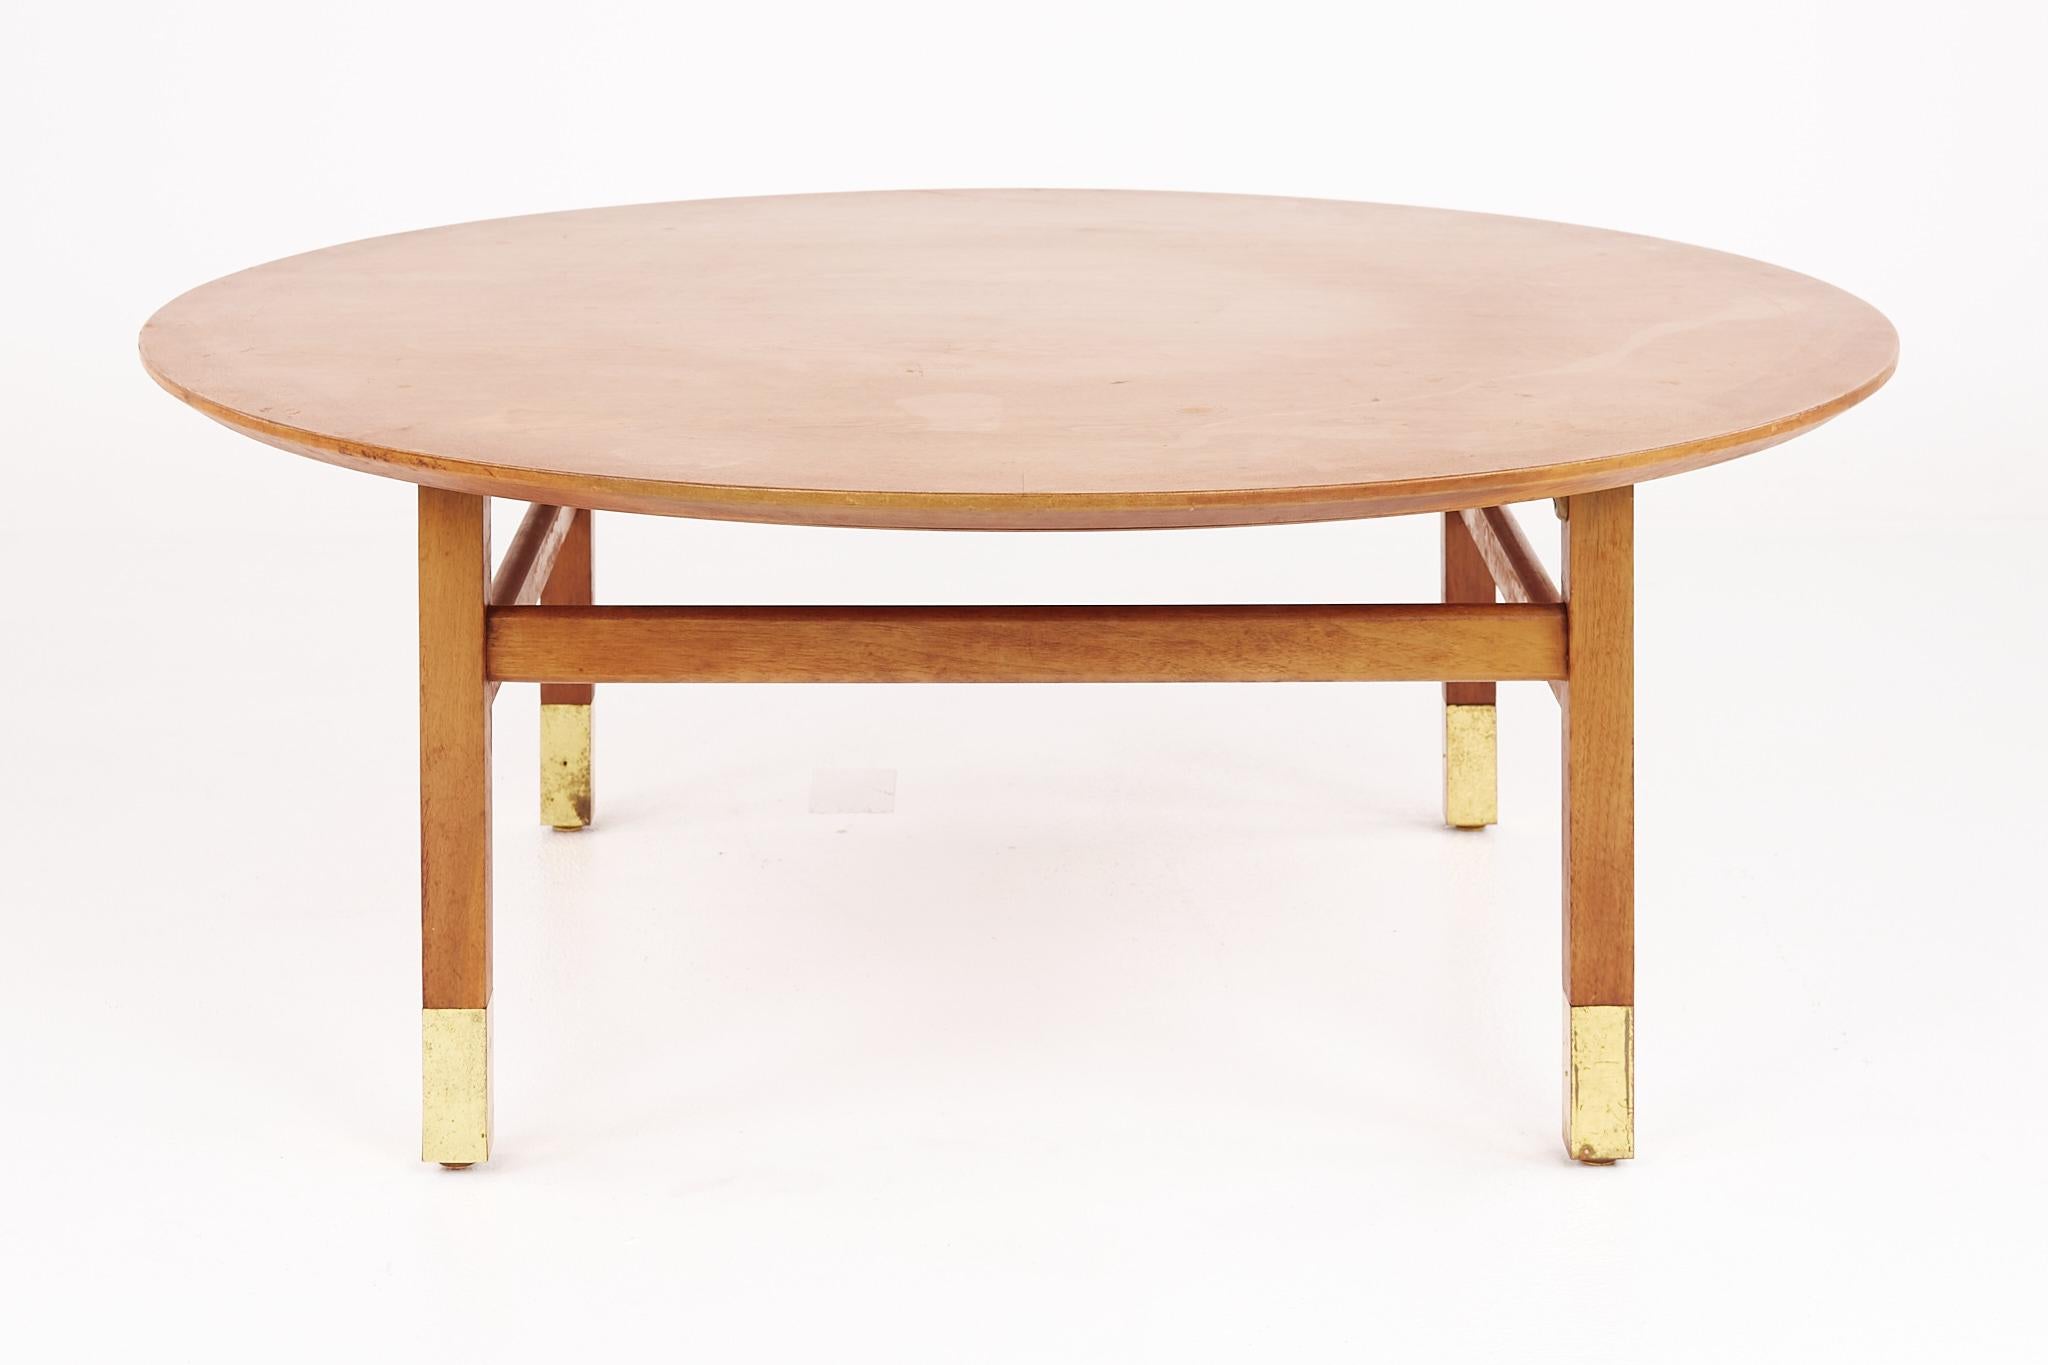 Founders furniture company Mitte des Jahrhunderts Nussbaum und Messing runden Couchtisch

Dieser Tisch misst: 38 breit x 38 tief x 14,5 Zoll hoch

alle Möbelstücke sind in einem sogenannten restaurierten Vintage-Zustand zu haben. Das bedeutet,